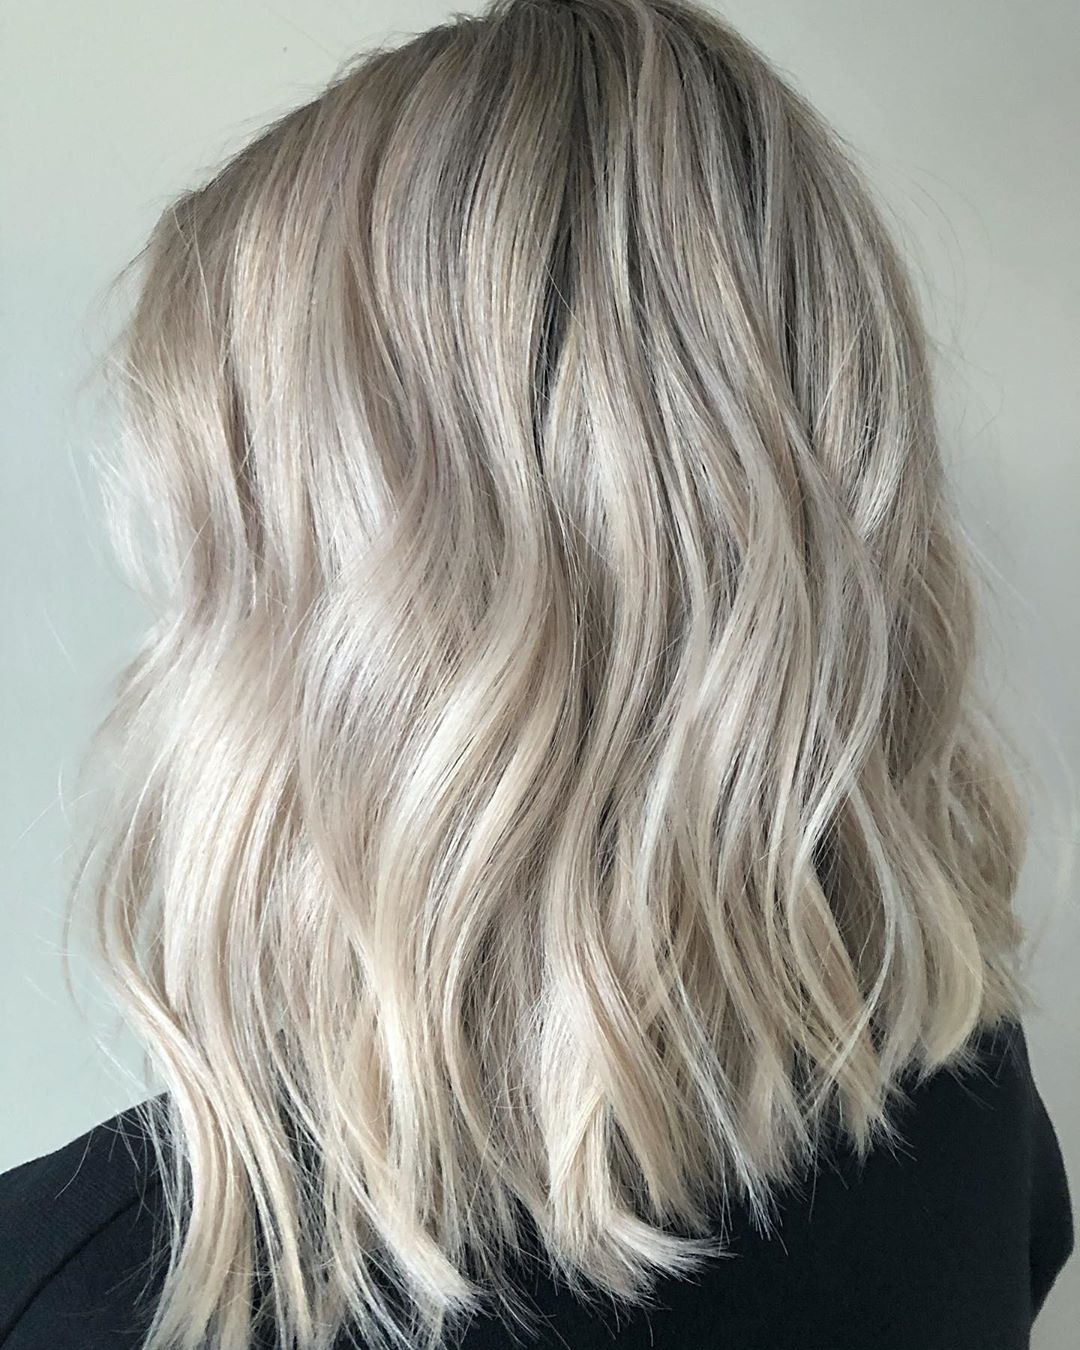 Icy Blonde on Medium-Length Hair with a Beach Wavy Style